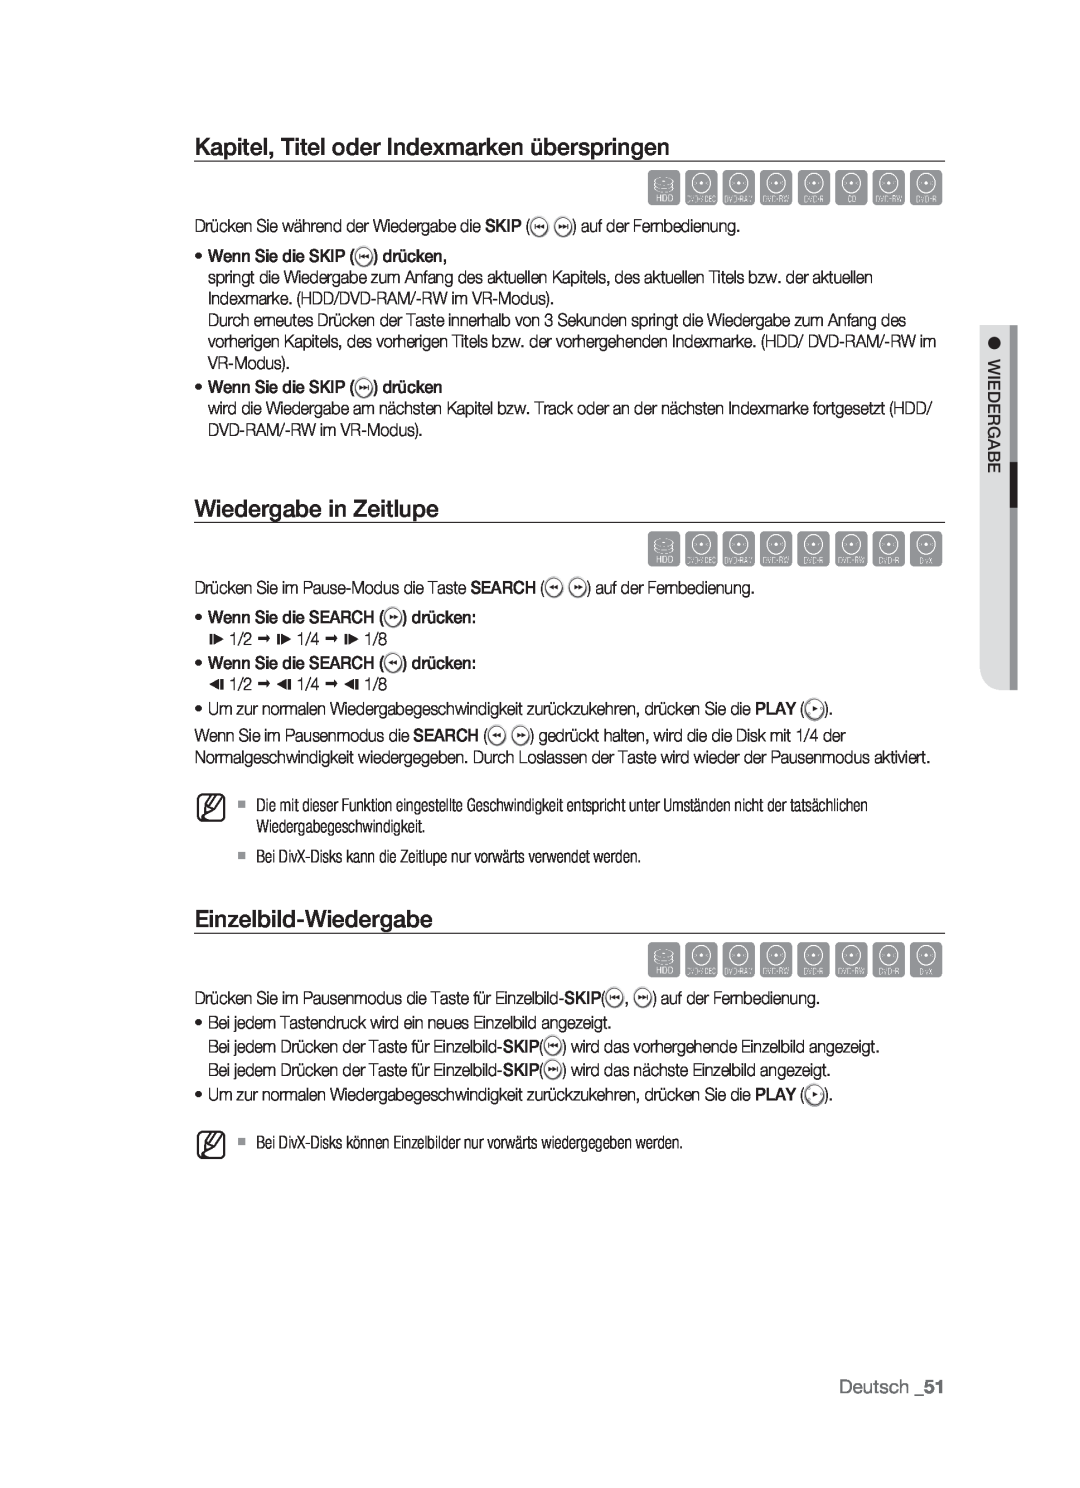 Samsung DVD-HR773/AUS Kapitel, Titel oder Indexmarken überspringen, Wiedergabe in Zeitlupe, Einzelbild-Wiedergabe, Deutsch 